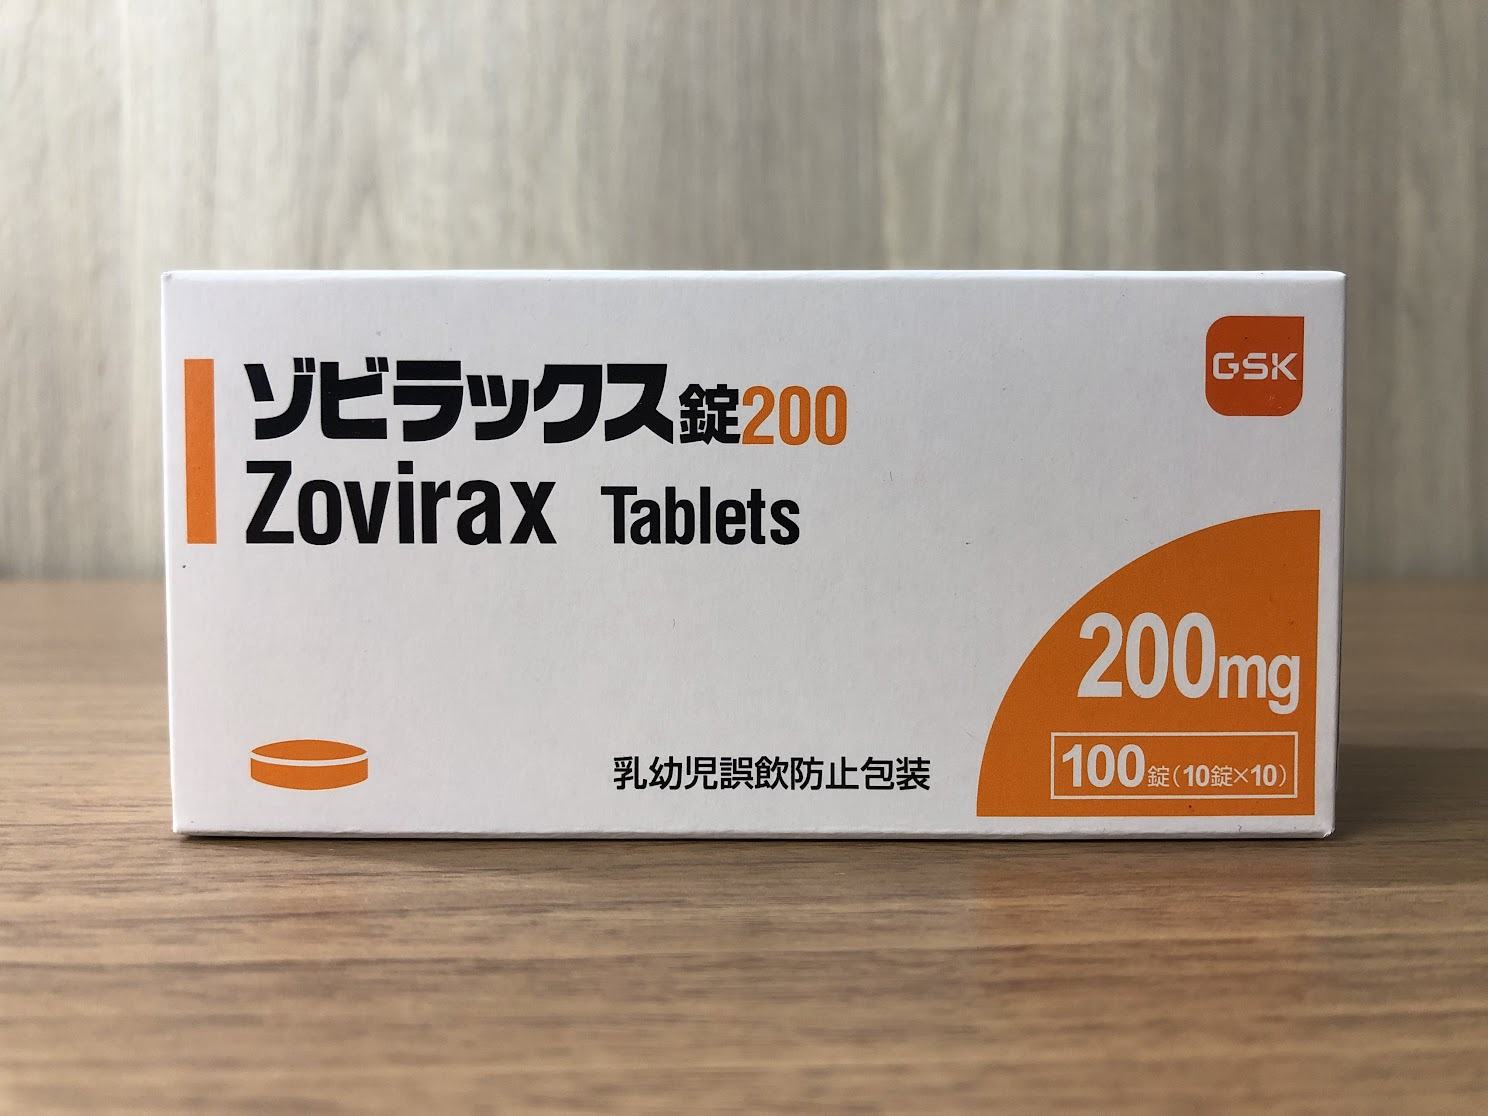 阿昔洛韦片 Aciclovir Tablets /Zovirax